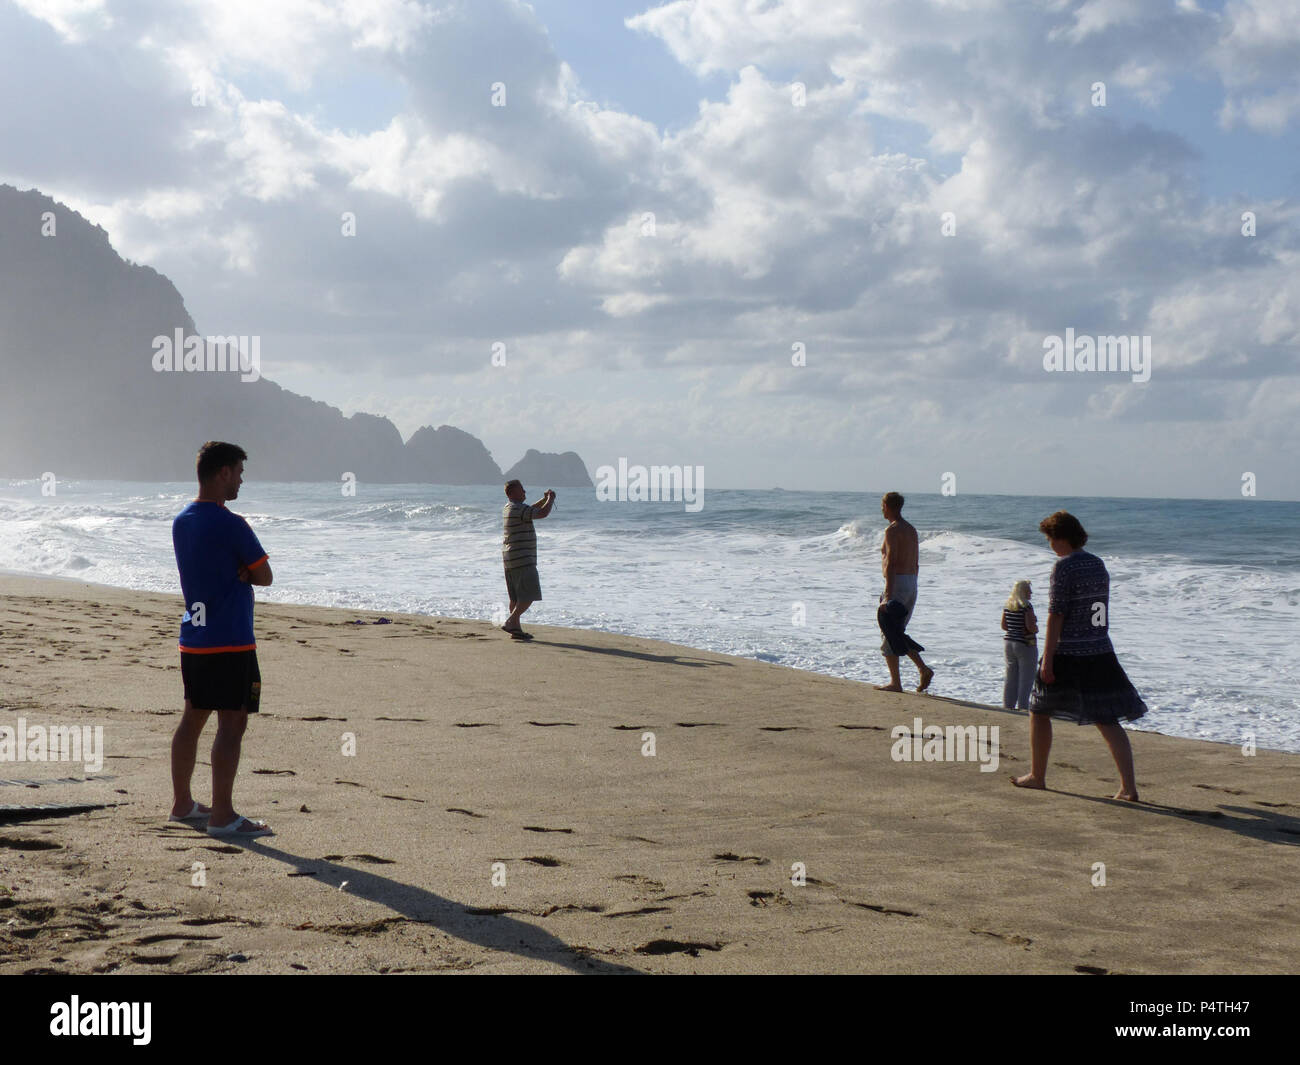 Spiaggia di Cleopatra, Alanya, Turchia, ottobre 30, 2017: spiaggia dopo la pioggia, guardare la gente sulle onde Foto Stock